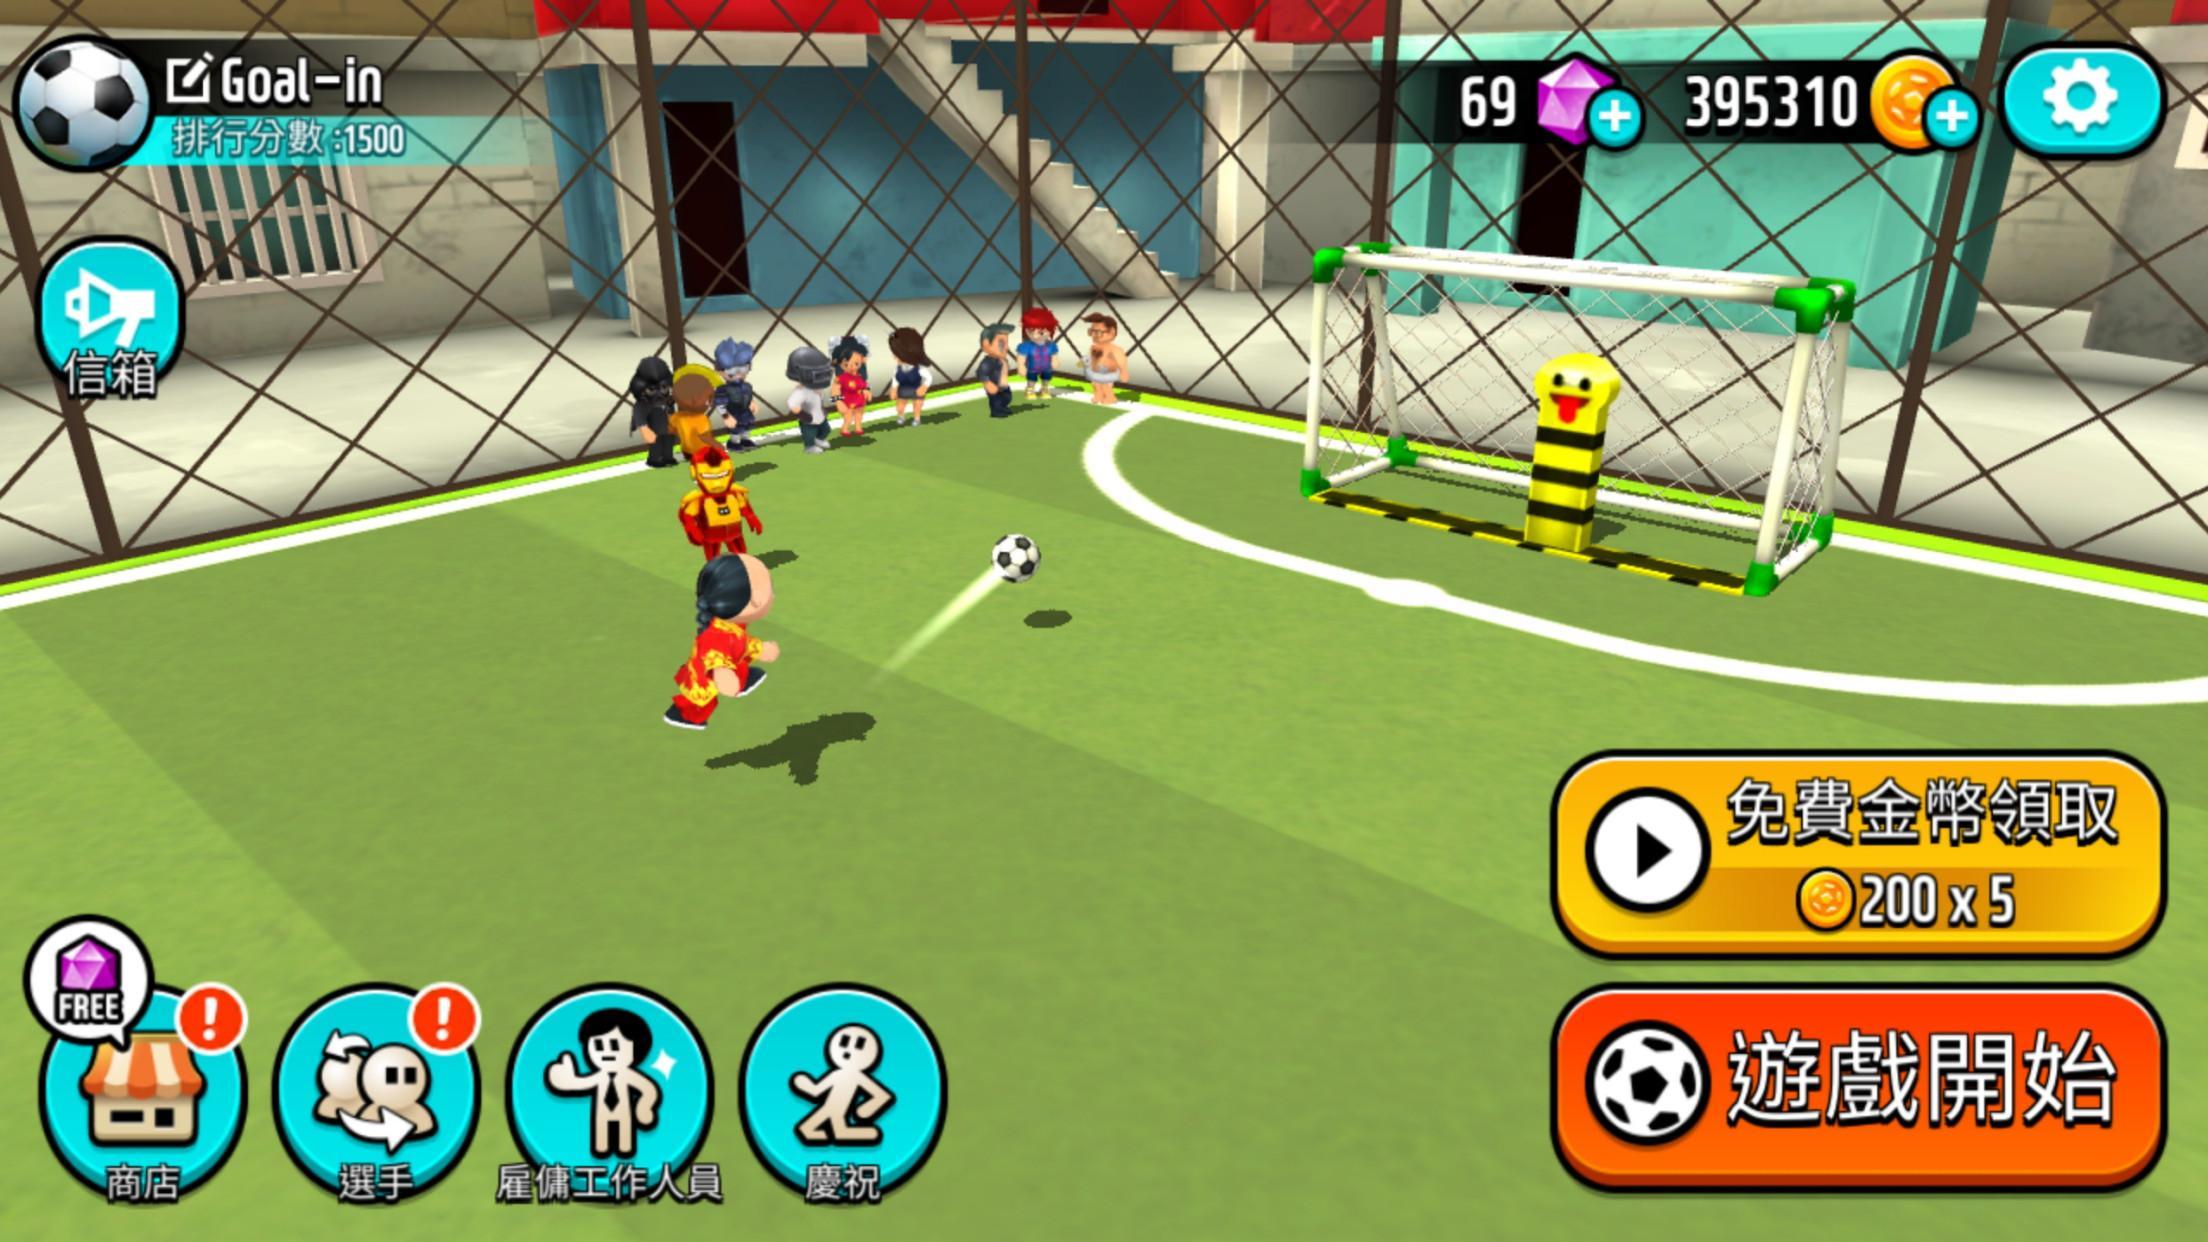 Screenshot 1 of Goal.io : 亂鬥足球 